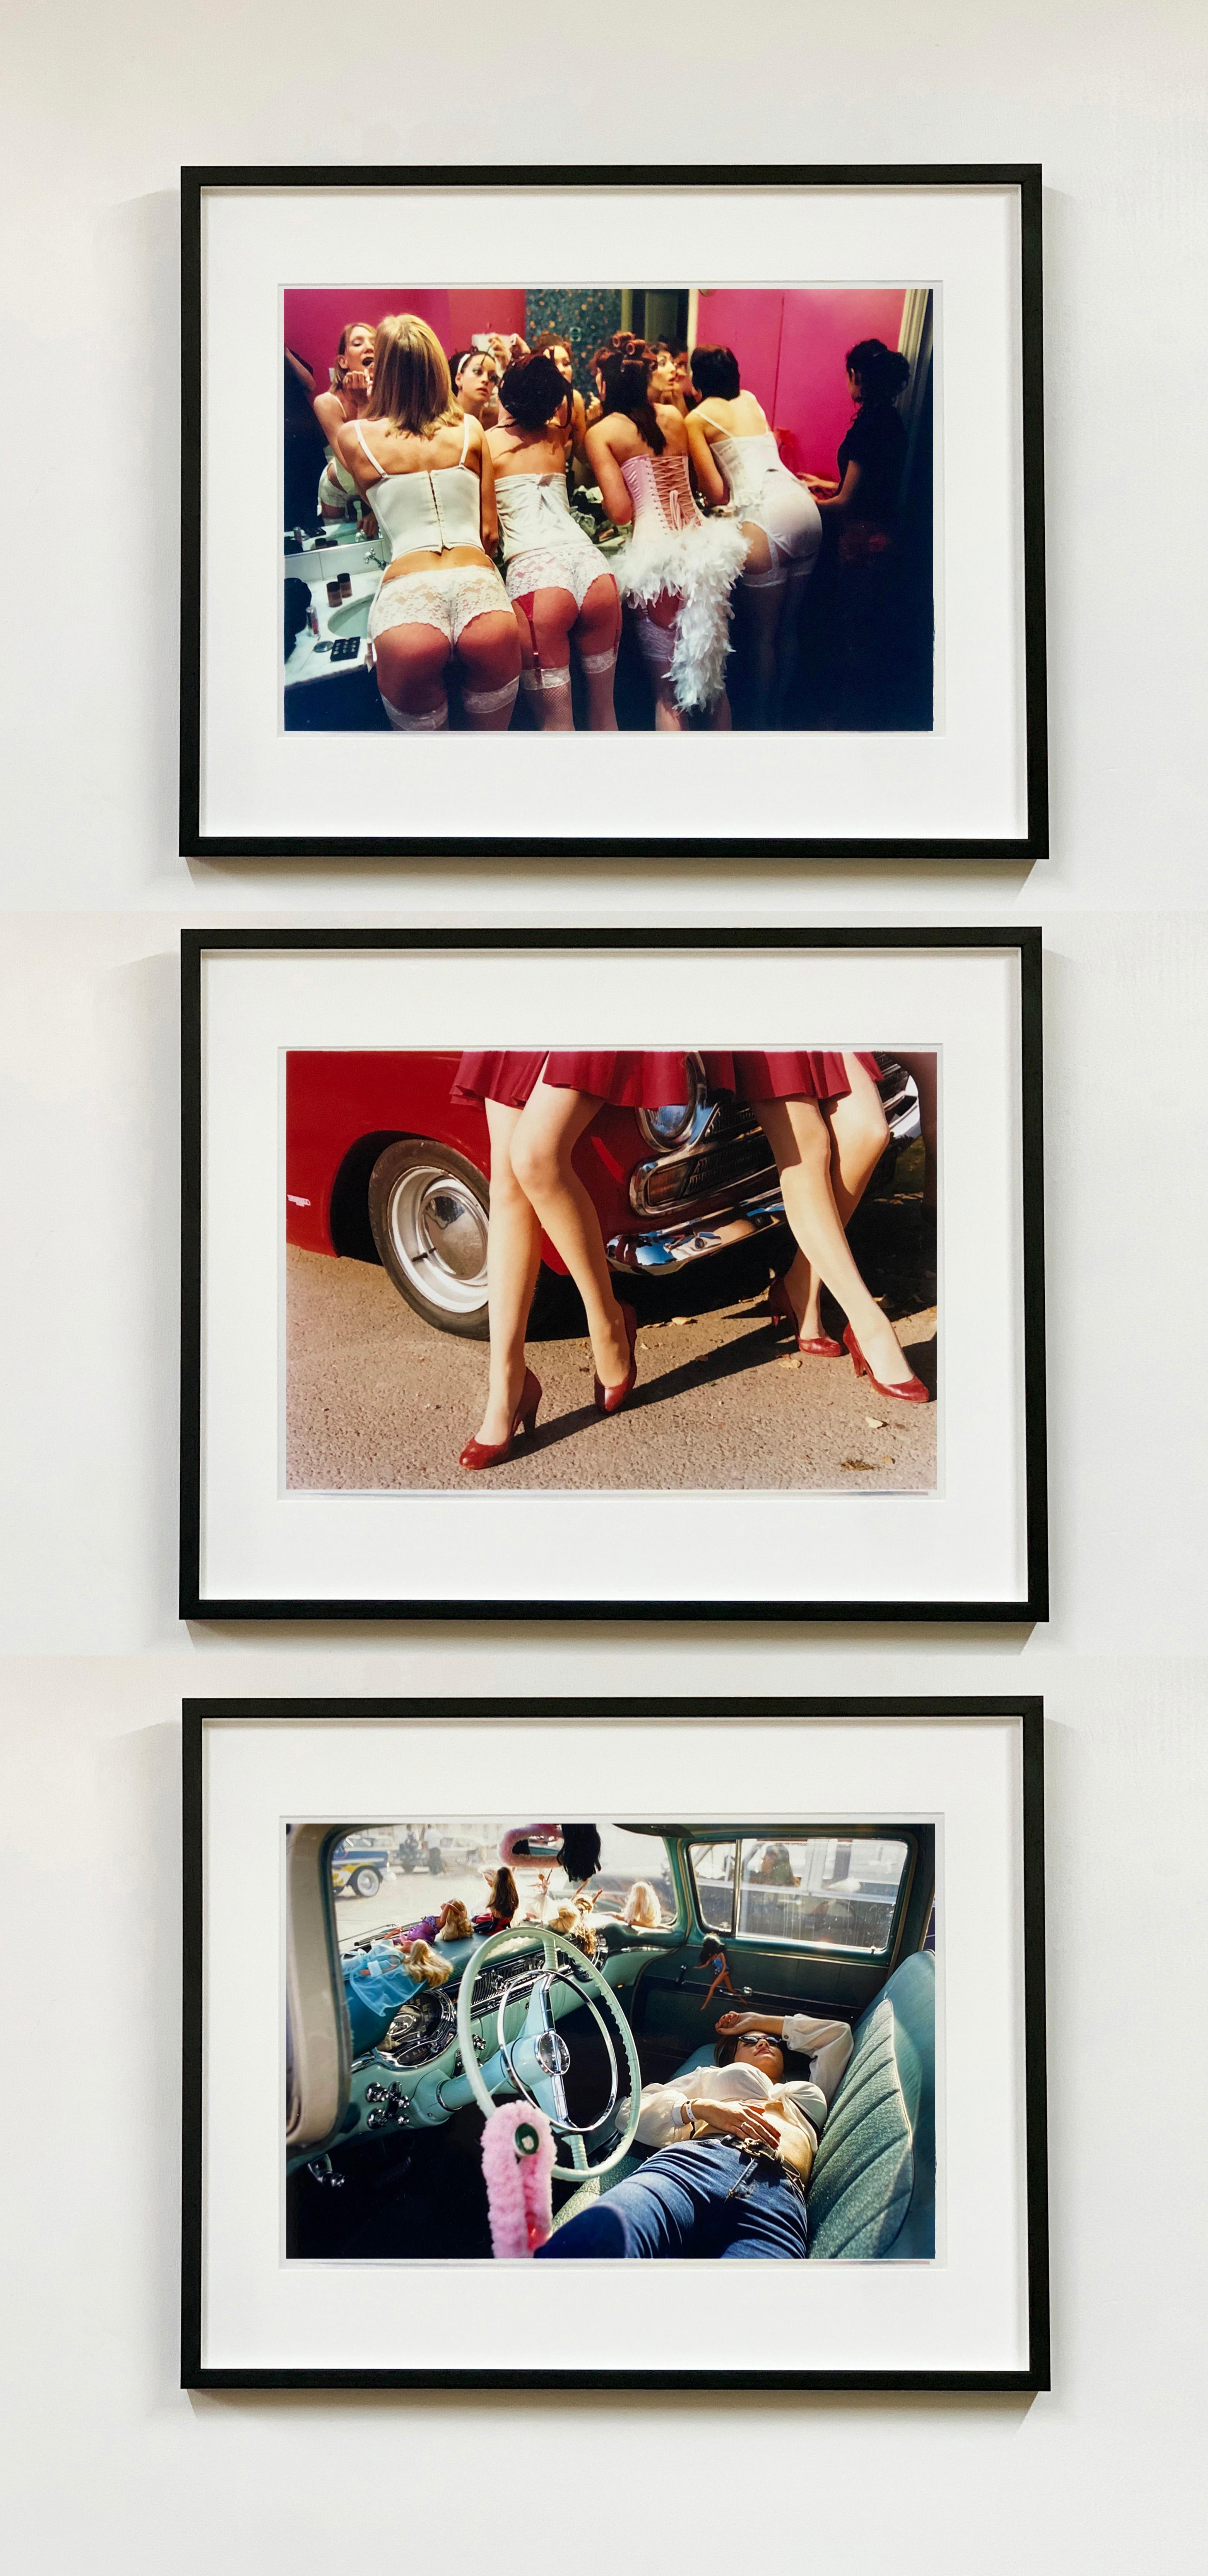 Belles of Shoreditch, aus Richard Heeps Burlesque-Serie.
Richard Heeps wurde durch seine Burlesque-Fotografie bekannt, nachdem er 2003 Aufführungen in Großbritannien und Amerika fotografiert hatte. Bei vielen Gelegenheiten verbrachte er viel Zeit